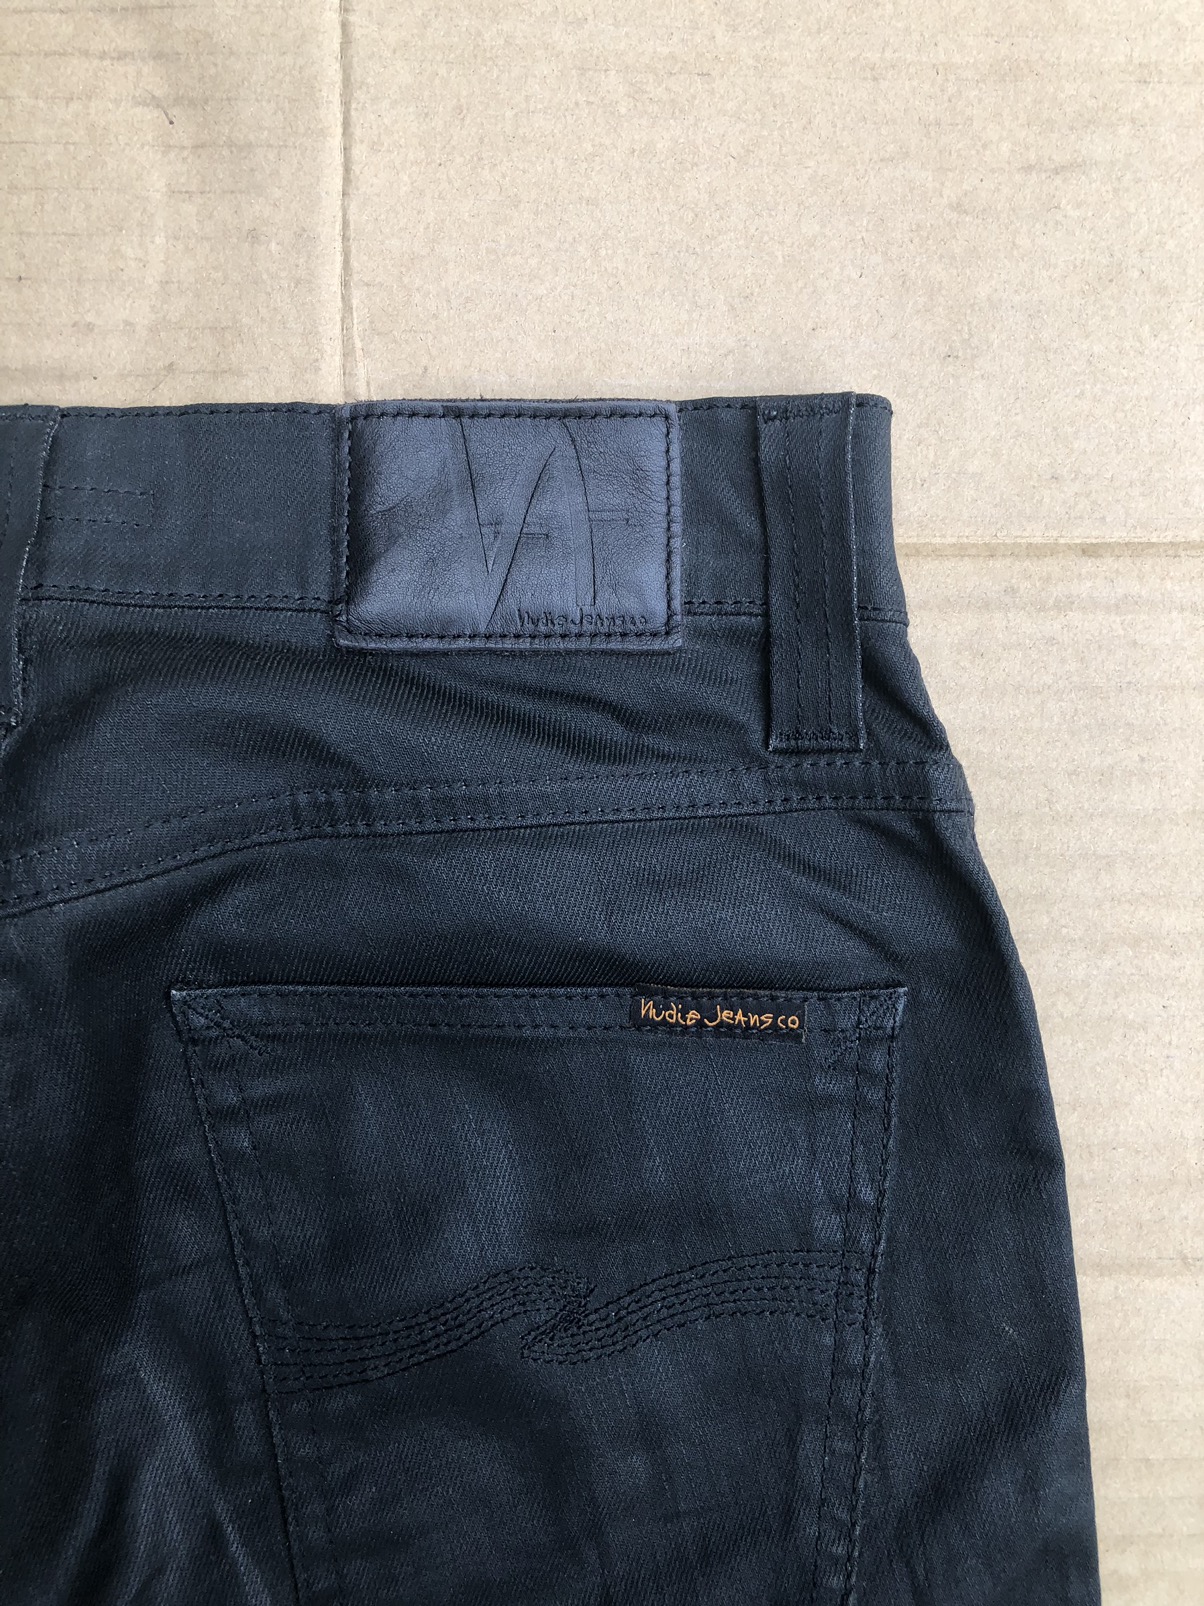 Nudie jeans slim Jim dry black coated Travis Scott - 11